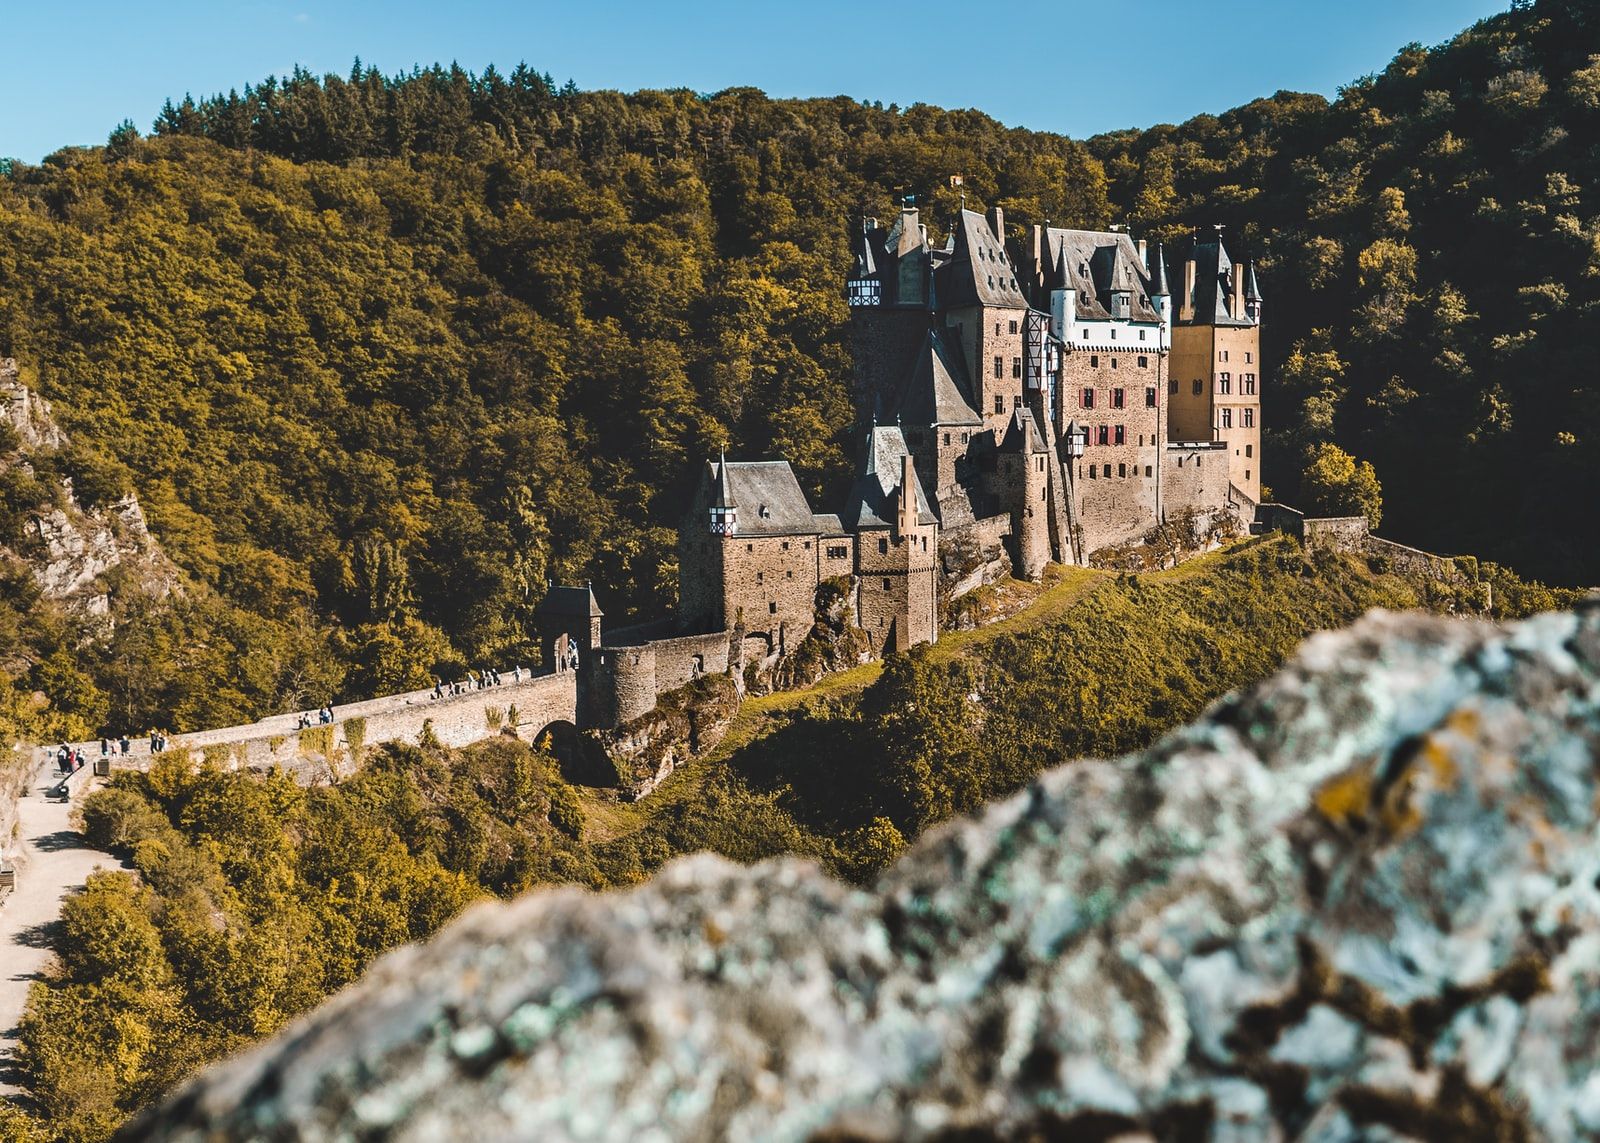 Die Burg Eltz an der Mosel ist wohl eines der meistfotografierten Motive in Deutschland. Foto: Unsplash